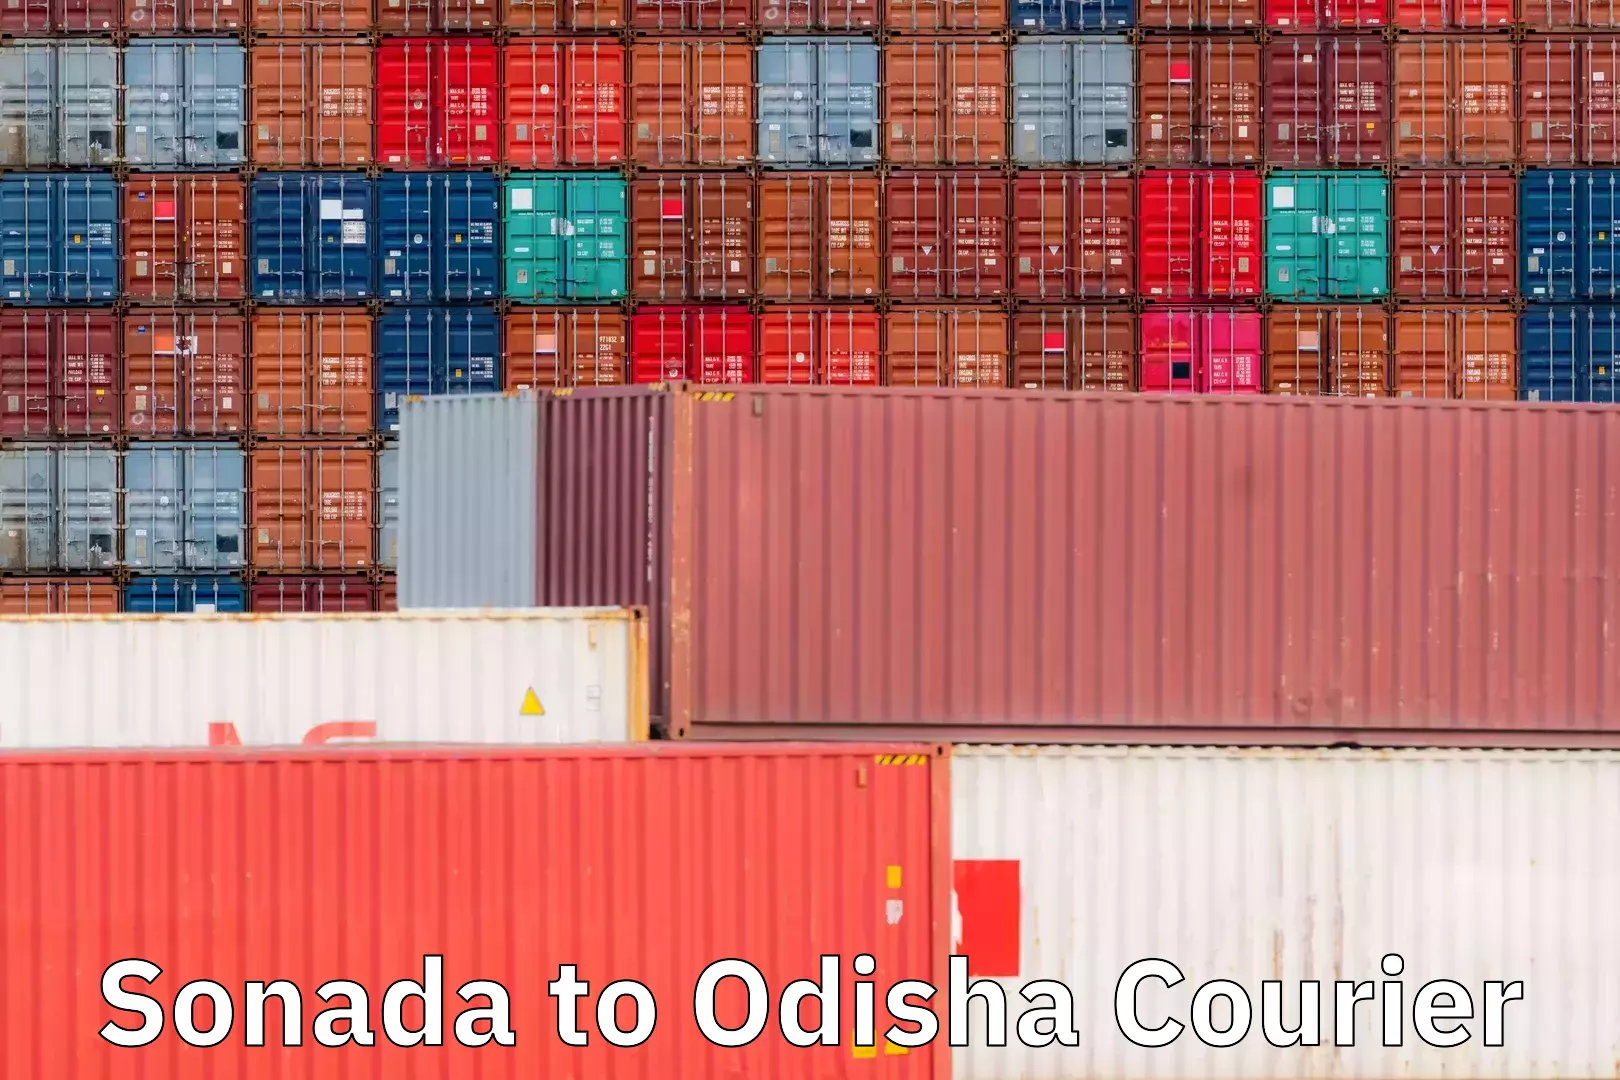 Express delivery capabilities Sonada to Odisha